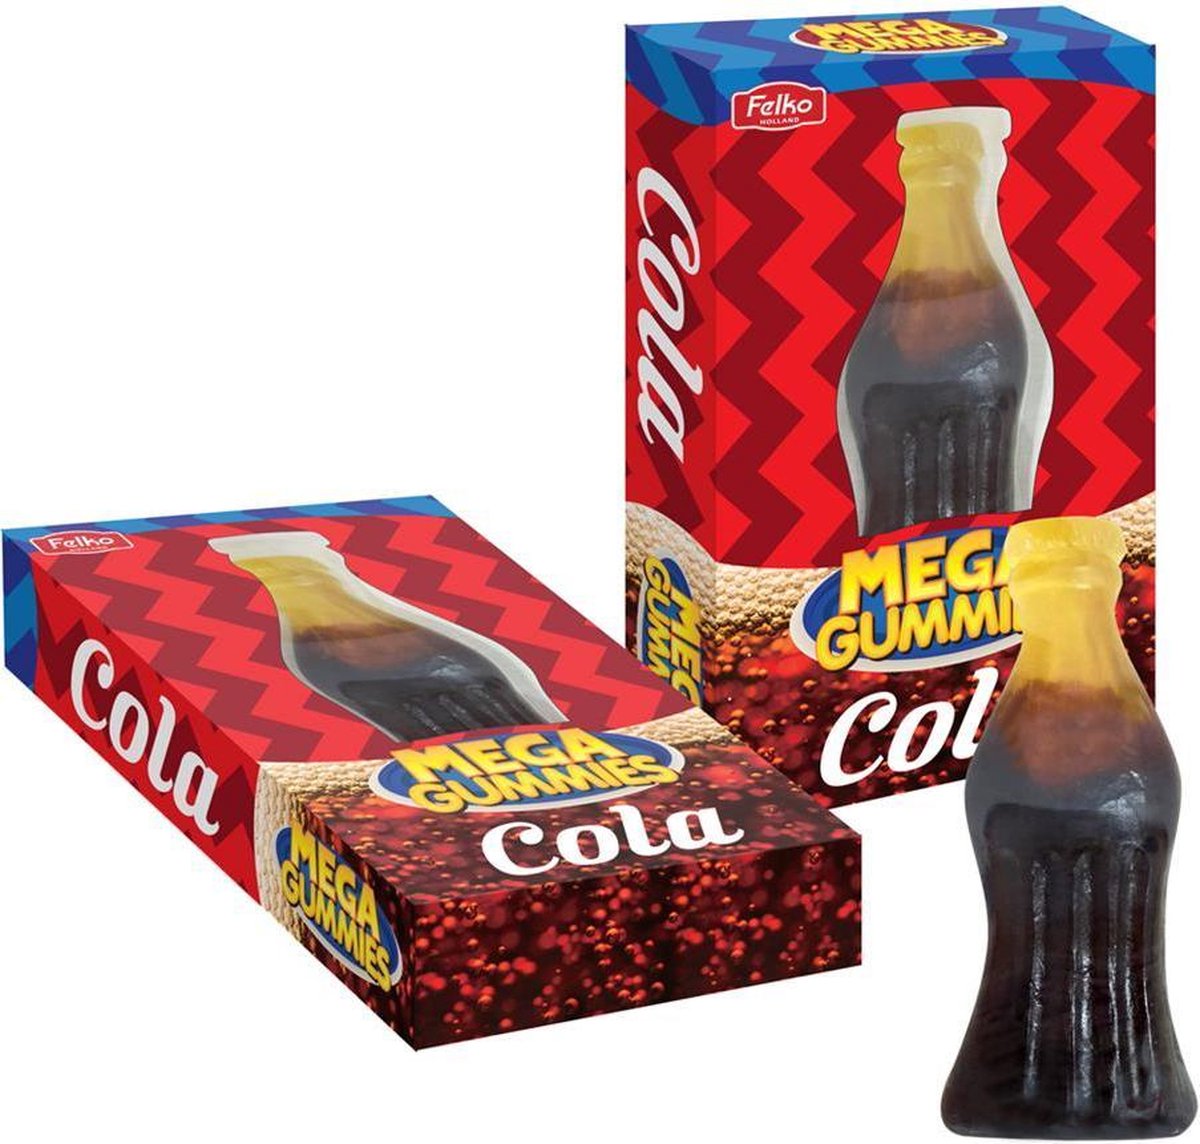 Mega gummies cola